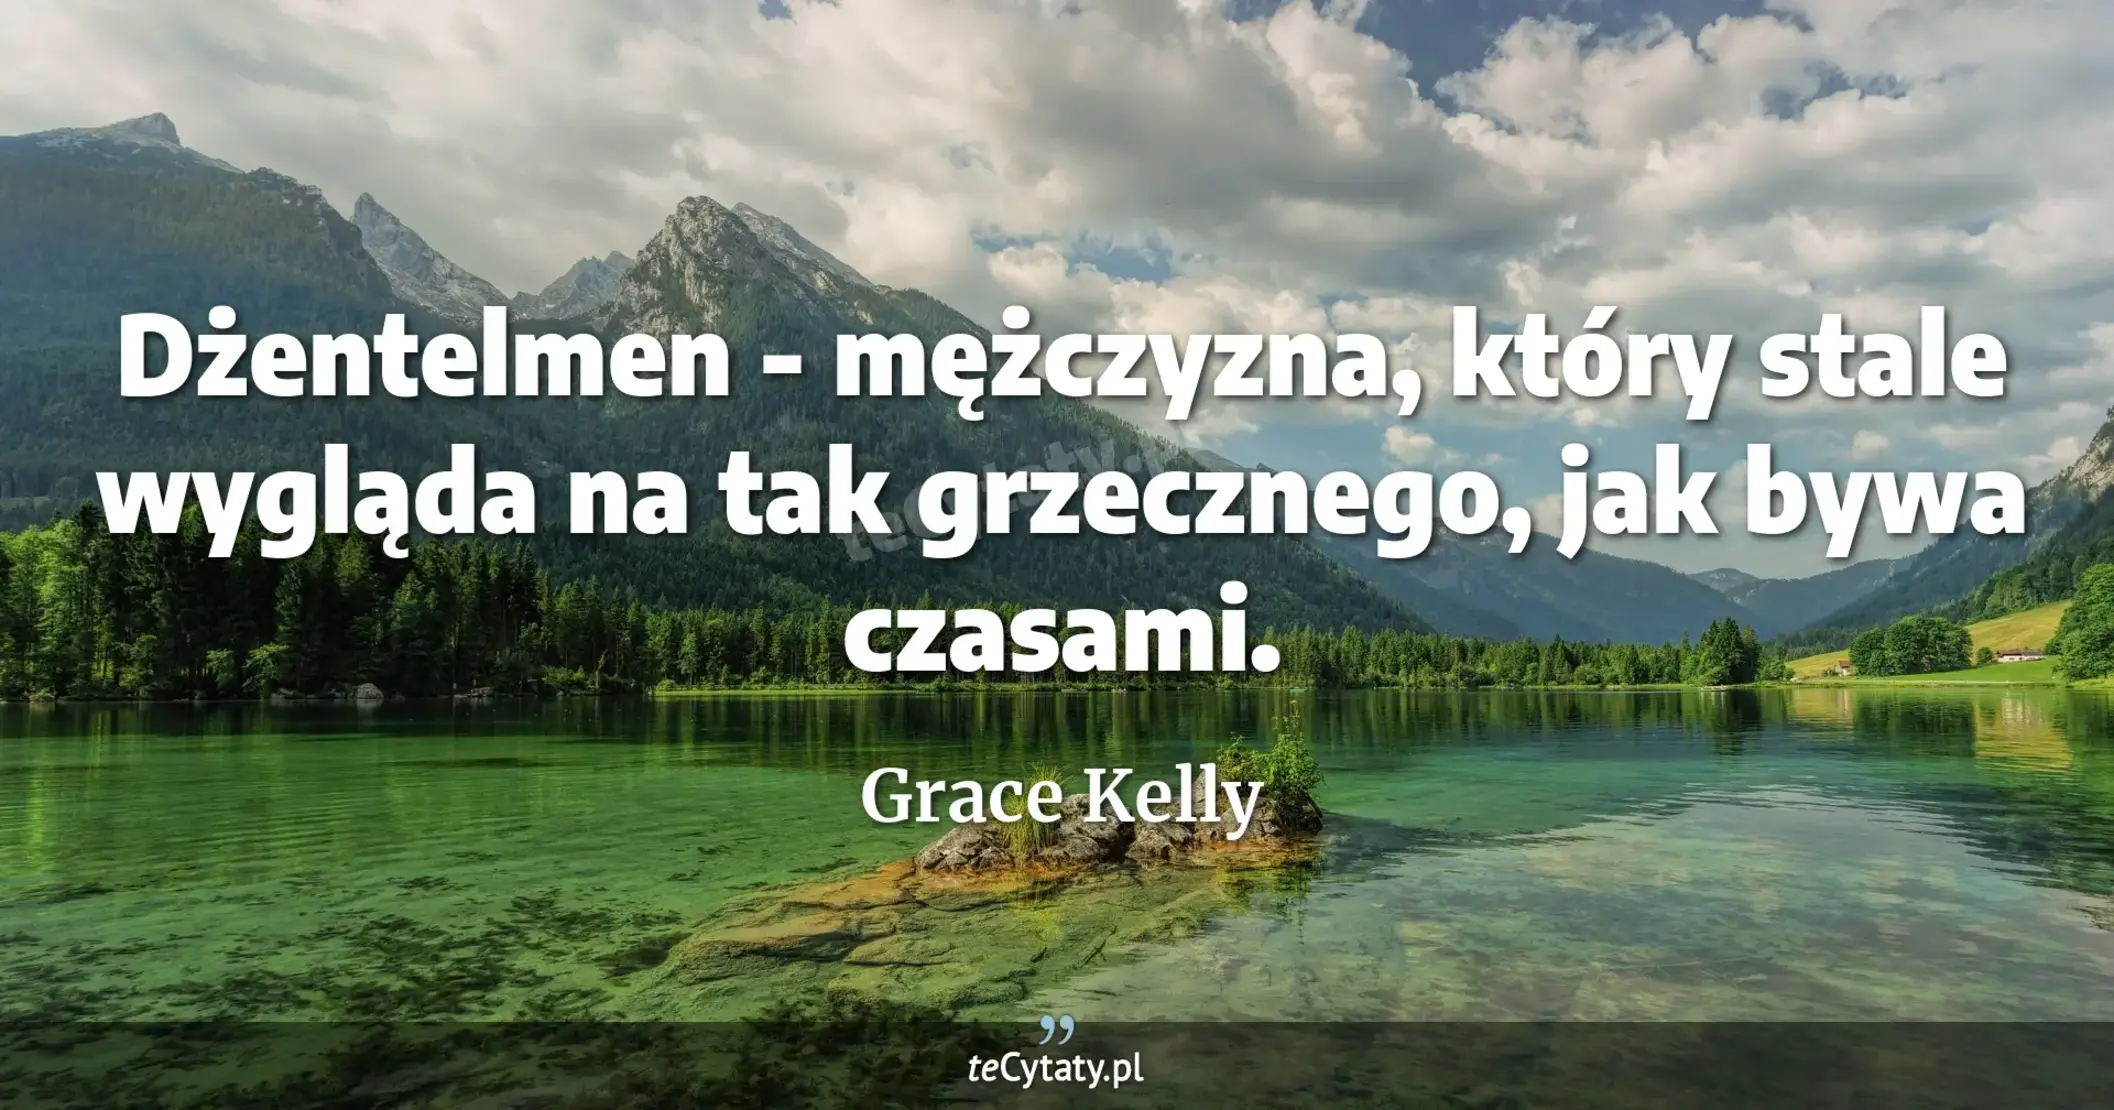 Dżentelmen - mężczyzna, który stale wygląda na tak grzecznego, jak bywa czasami. - Grace Kelly